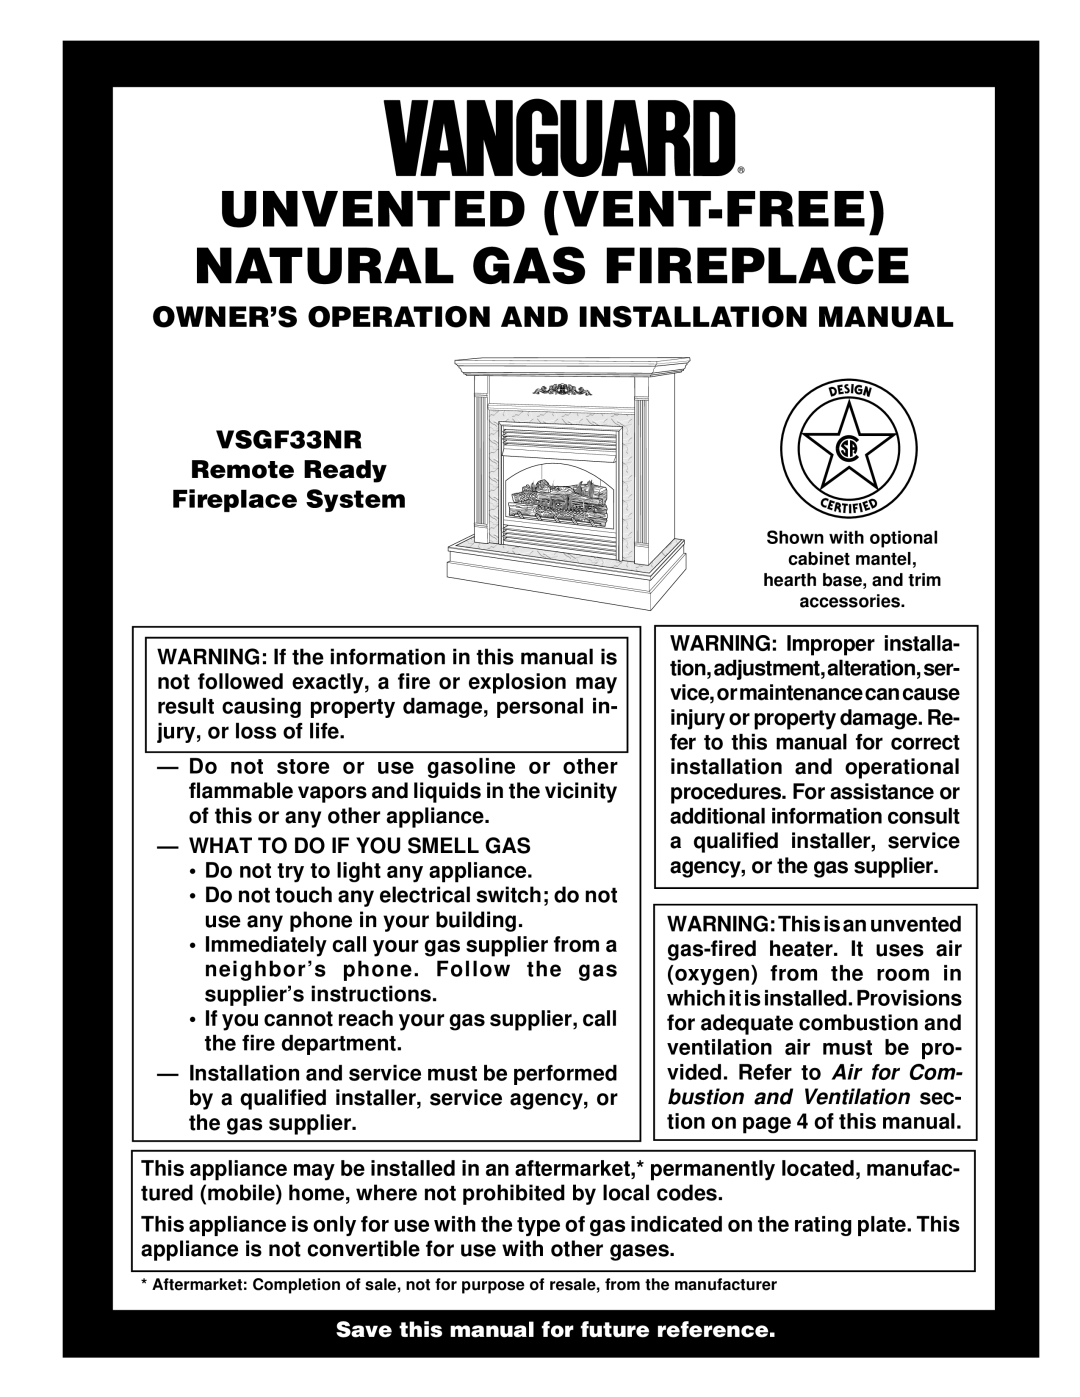 Desa VSGF33NR installation manual Owner’S Operation And Installation Manual, What To Do If You Smell Gas 